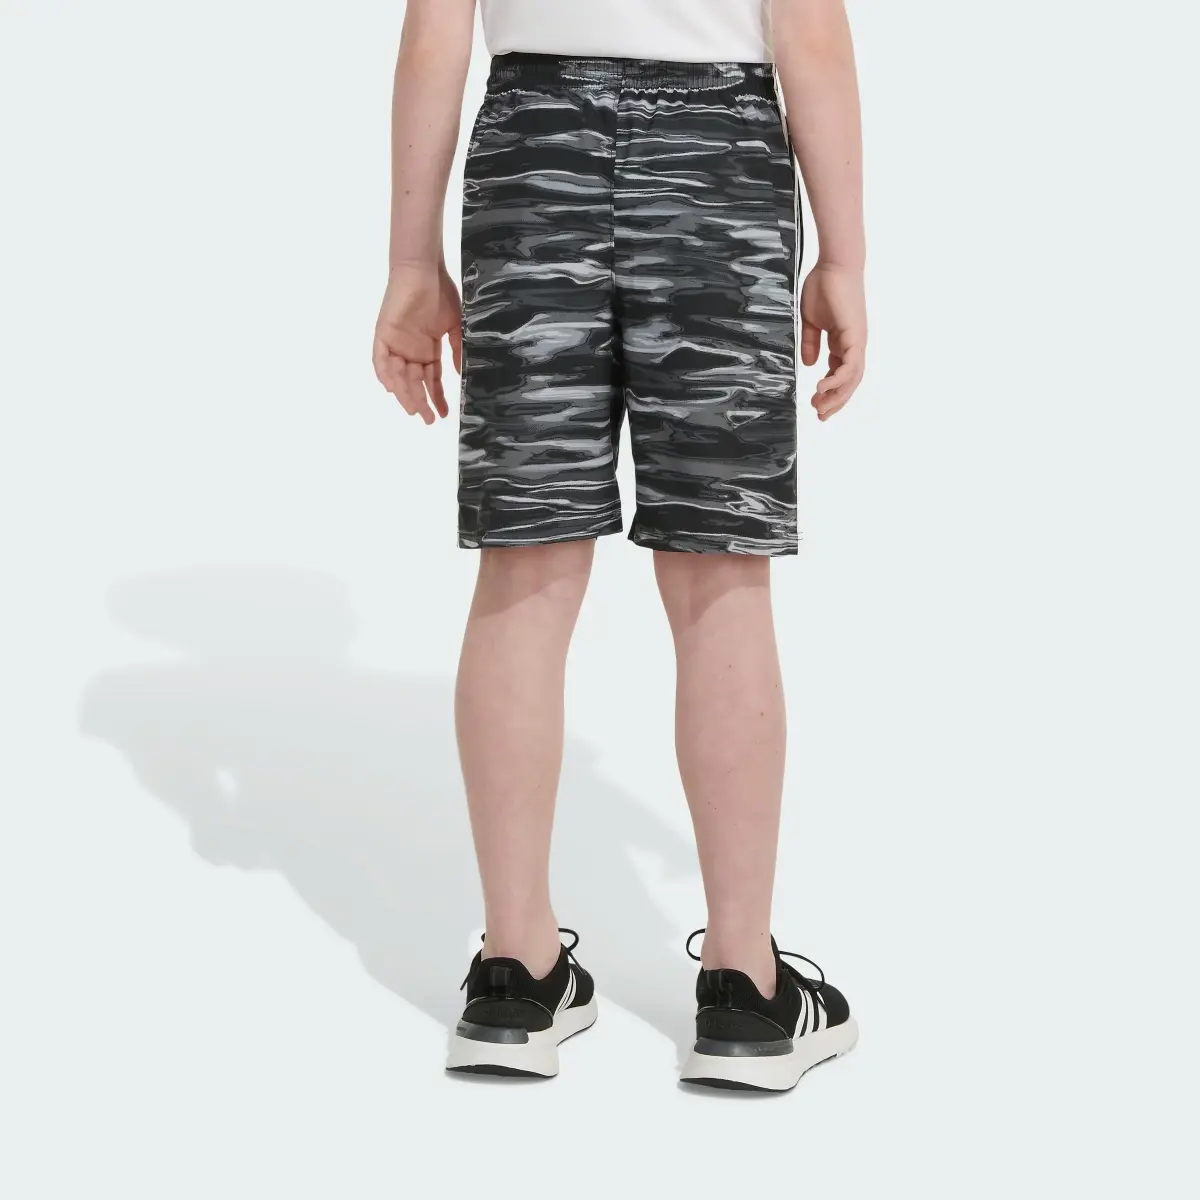 Adidas Allover Print Liquid Camo Woven Shorts. 2